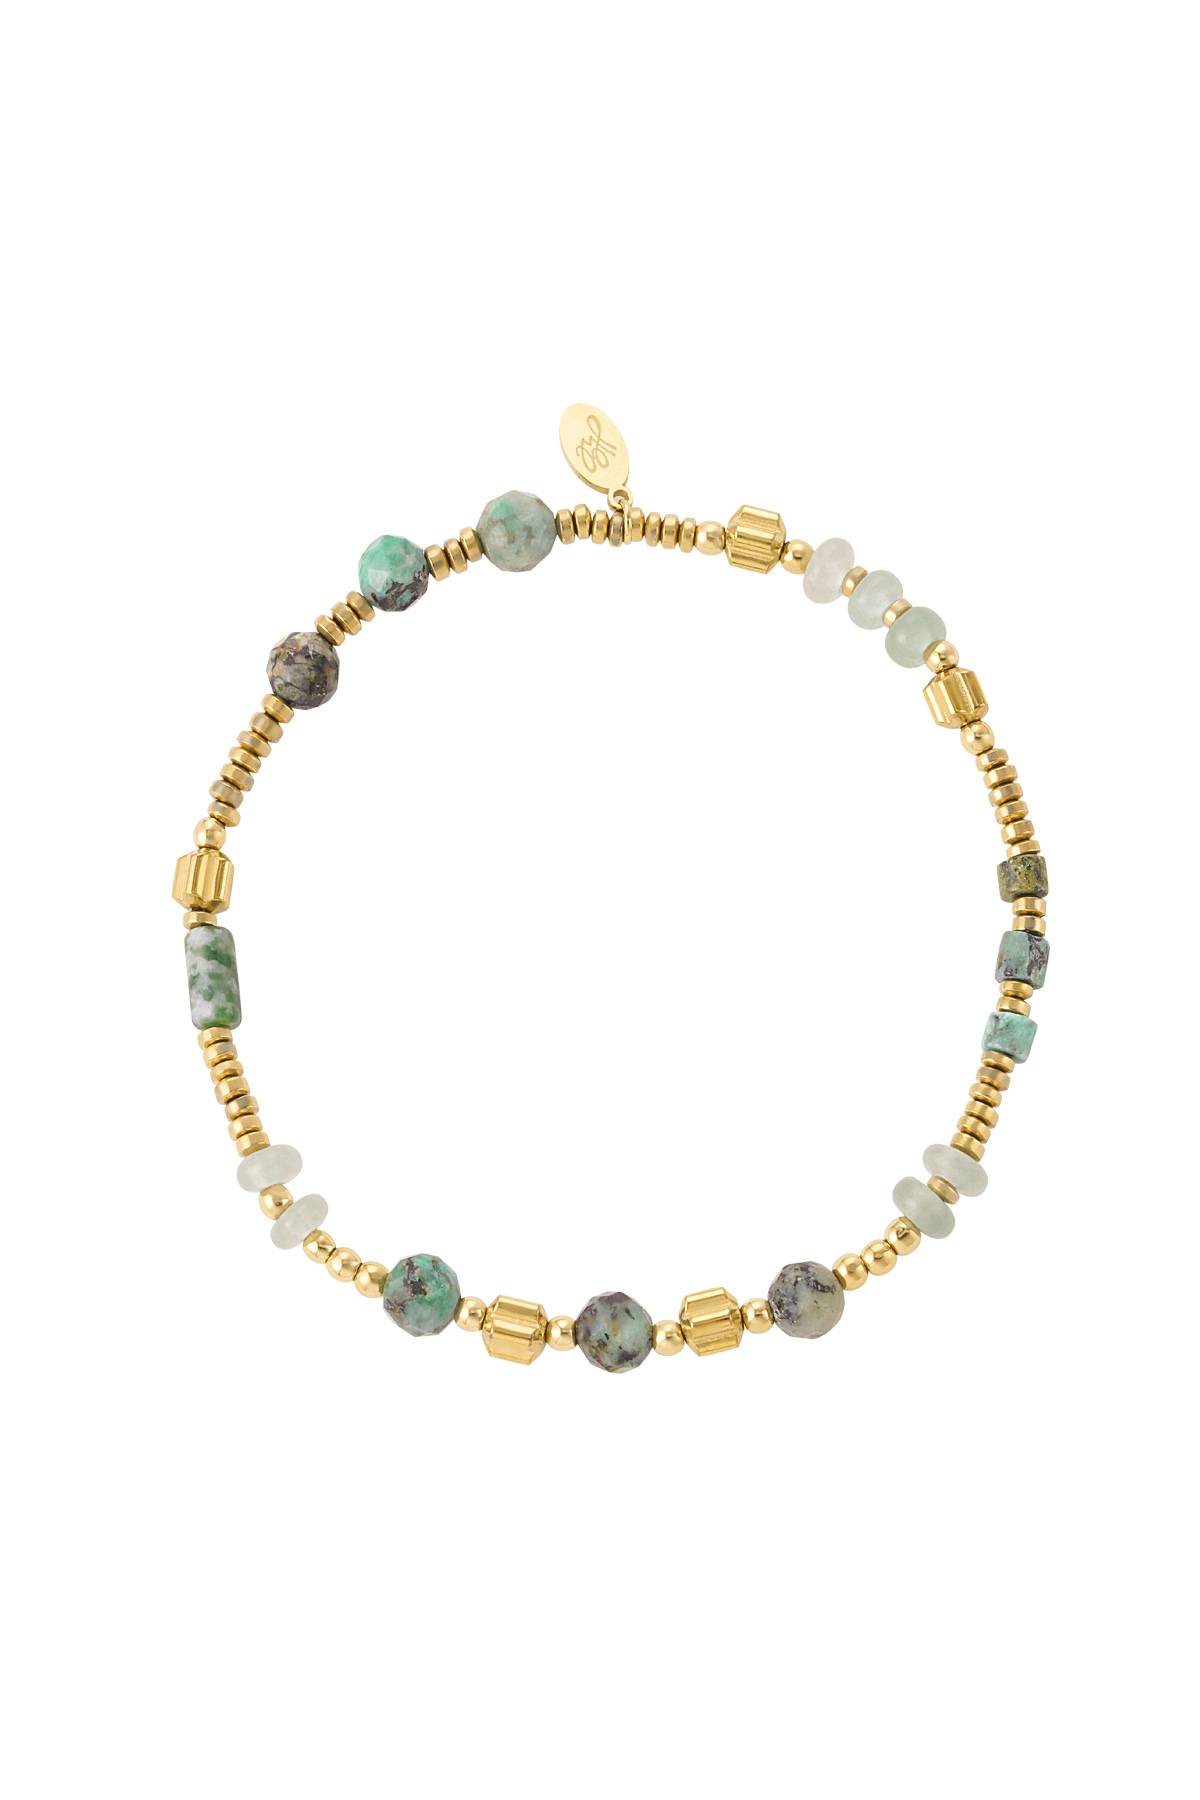 Bracelet beads &amp; stones - green &amp; gold Stainless Steel